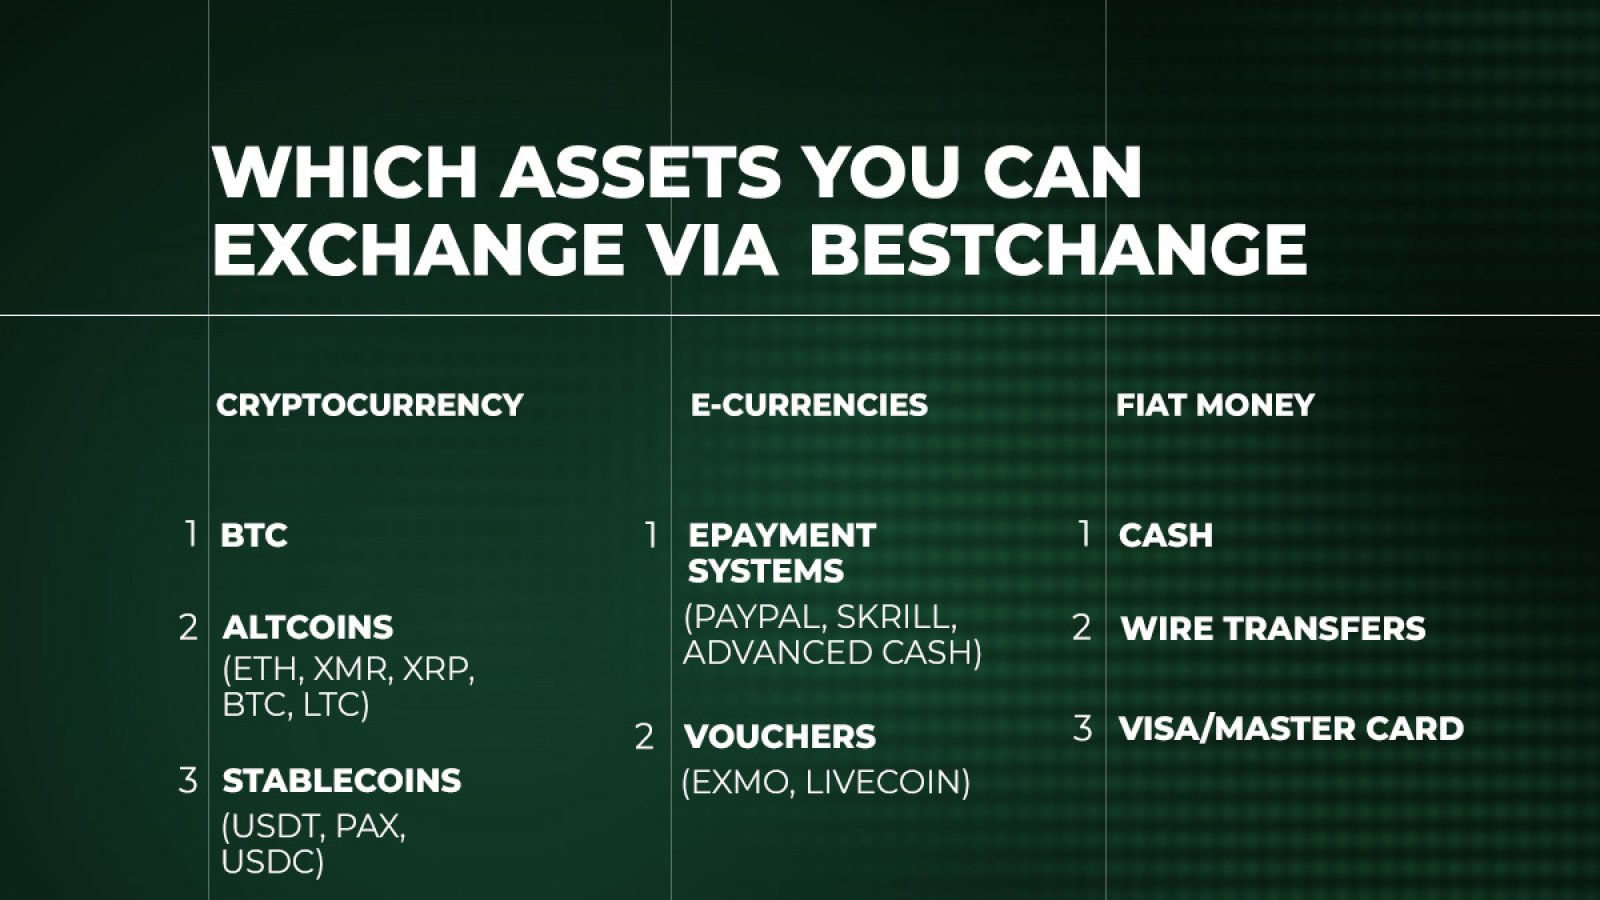 Assets you can exchange via Bestchange